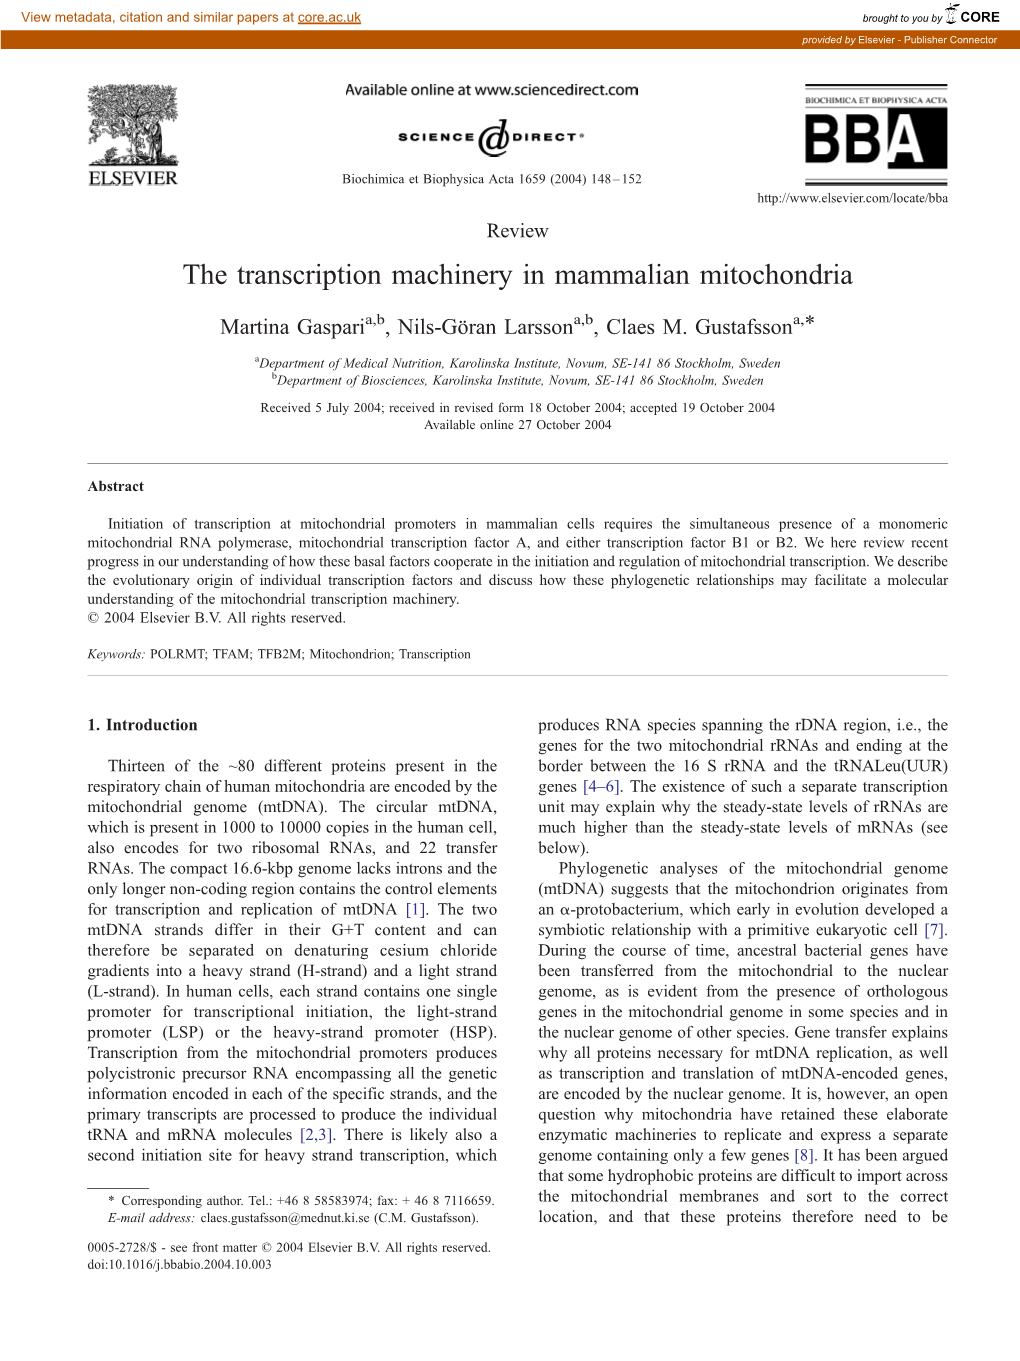 The Transcription Machinery in Mammalian Mitochondria